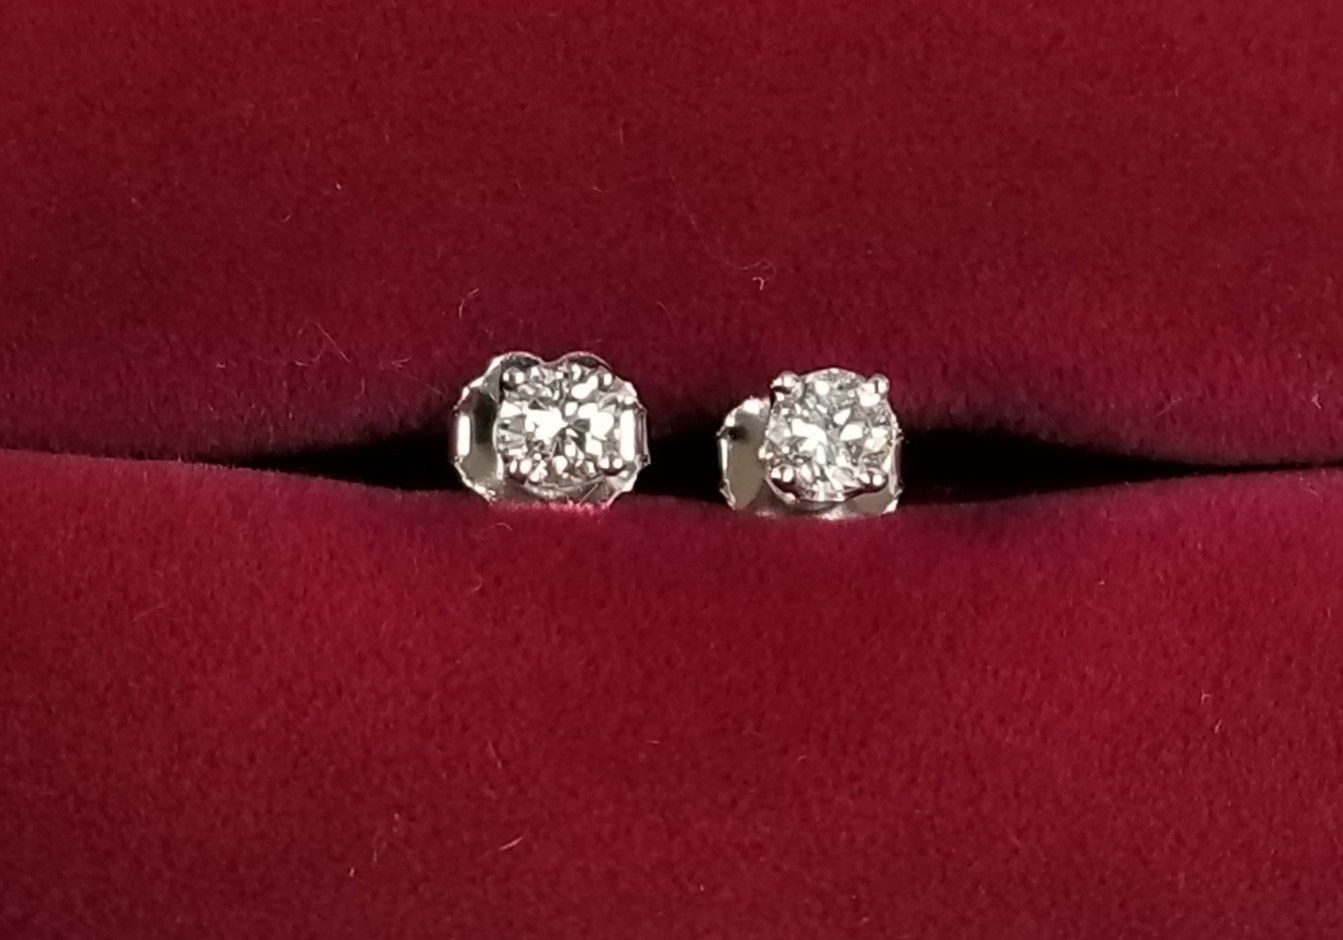 14k White Gold Diamond Stud Earrings 0.39 cts. t.w.